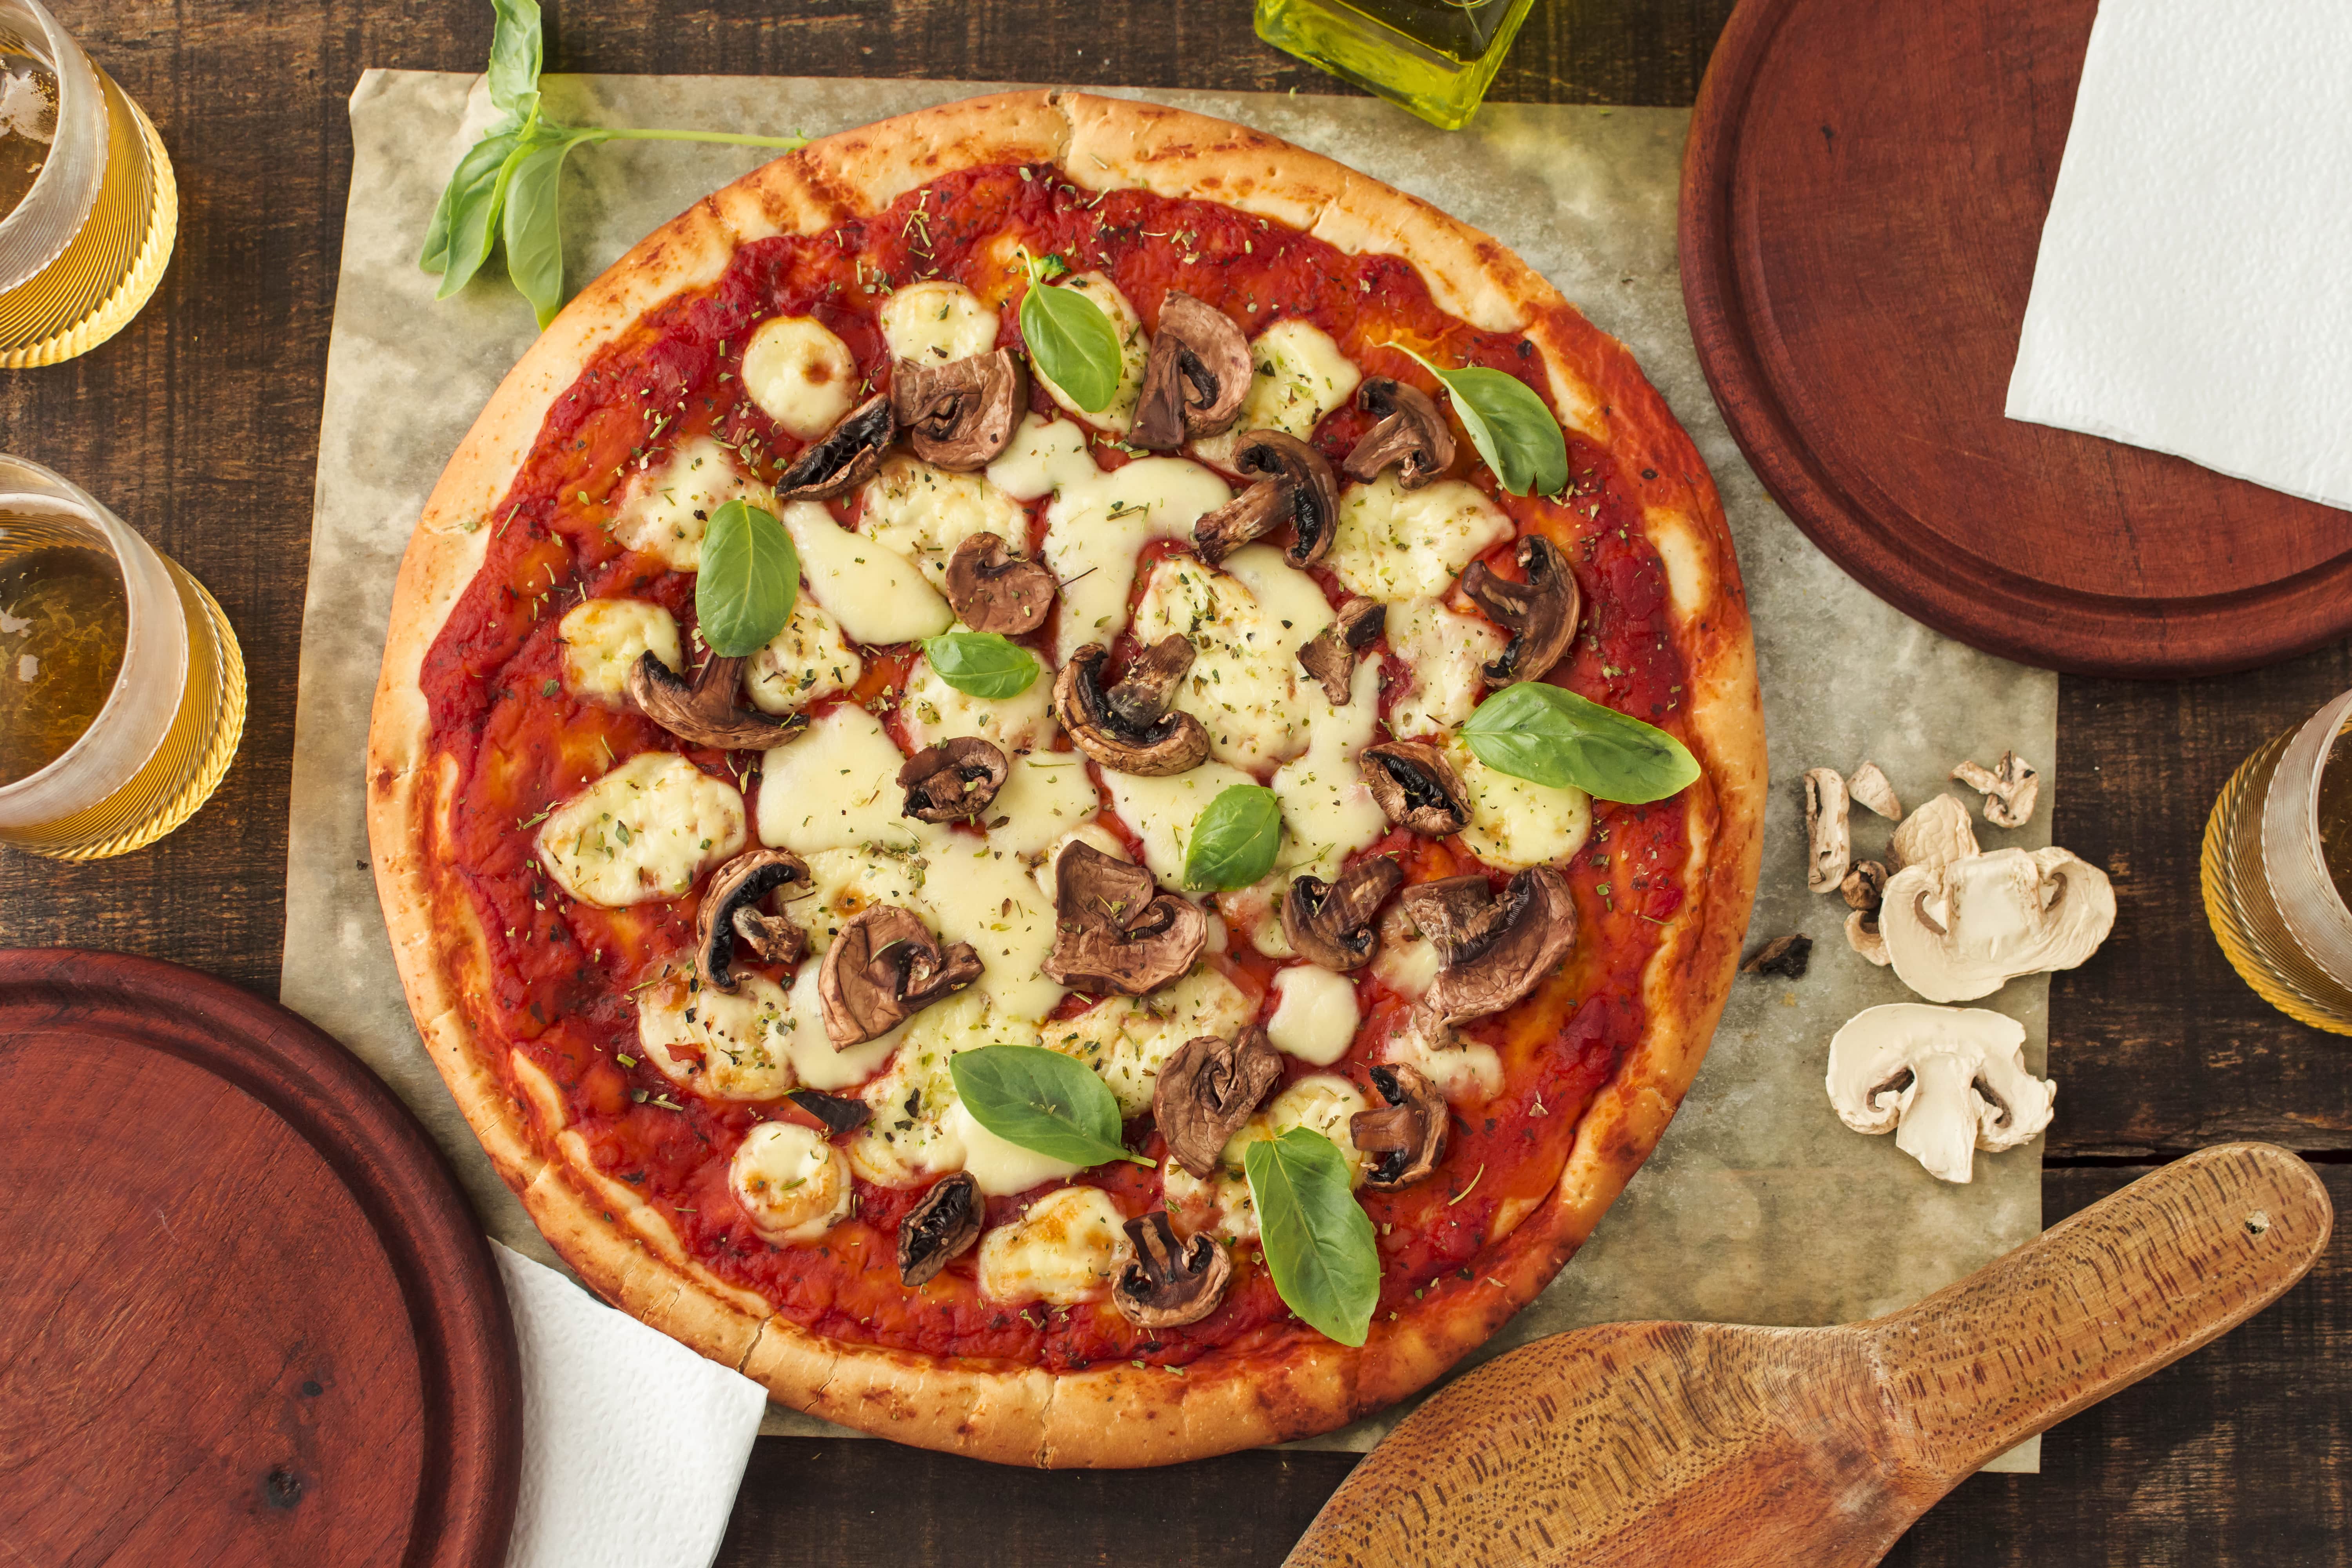 Apresentamos a Pizza Siciliana, uma explosão de sabores no cardápio  Brasiliana 🍕💚💛 O molho de tomate especial é a base perfeita para…